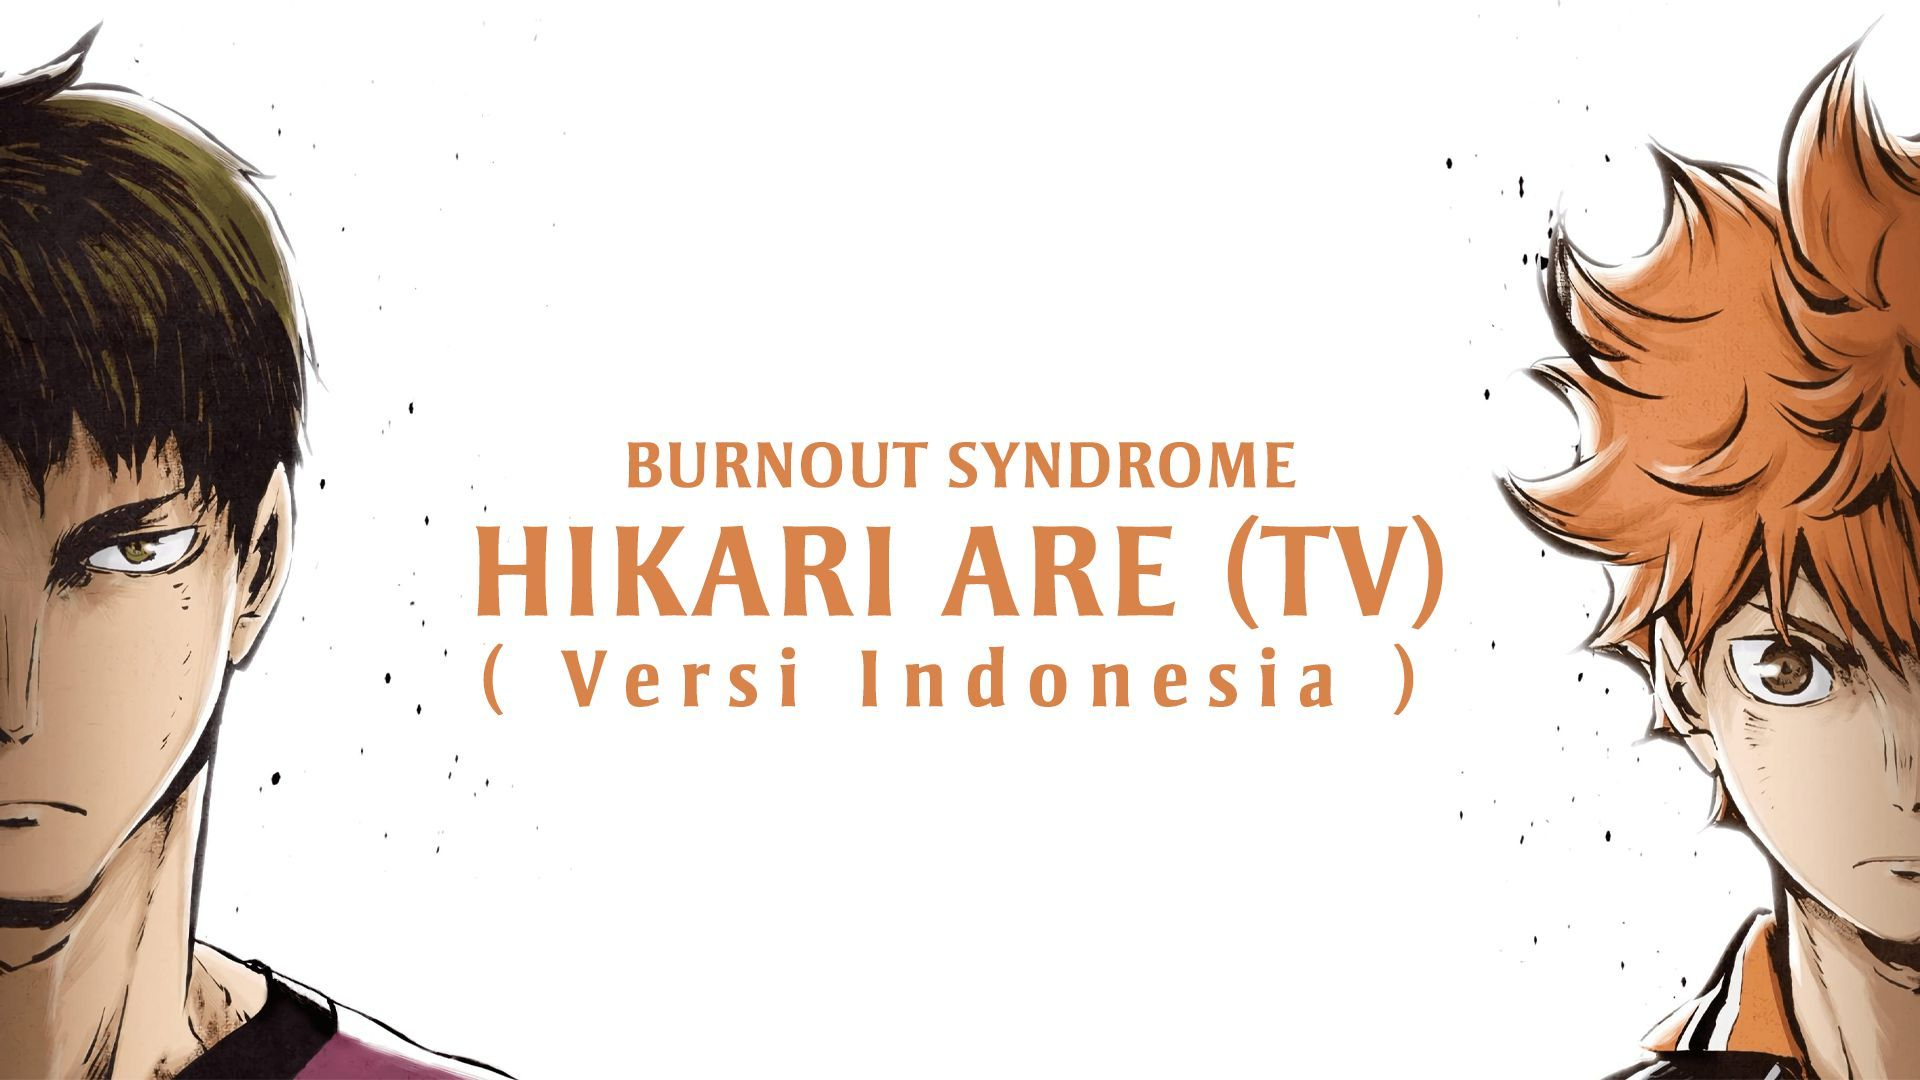 Haikyuu!! Season 3 OP 1 - Hikari Are Lyrics 